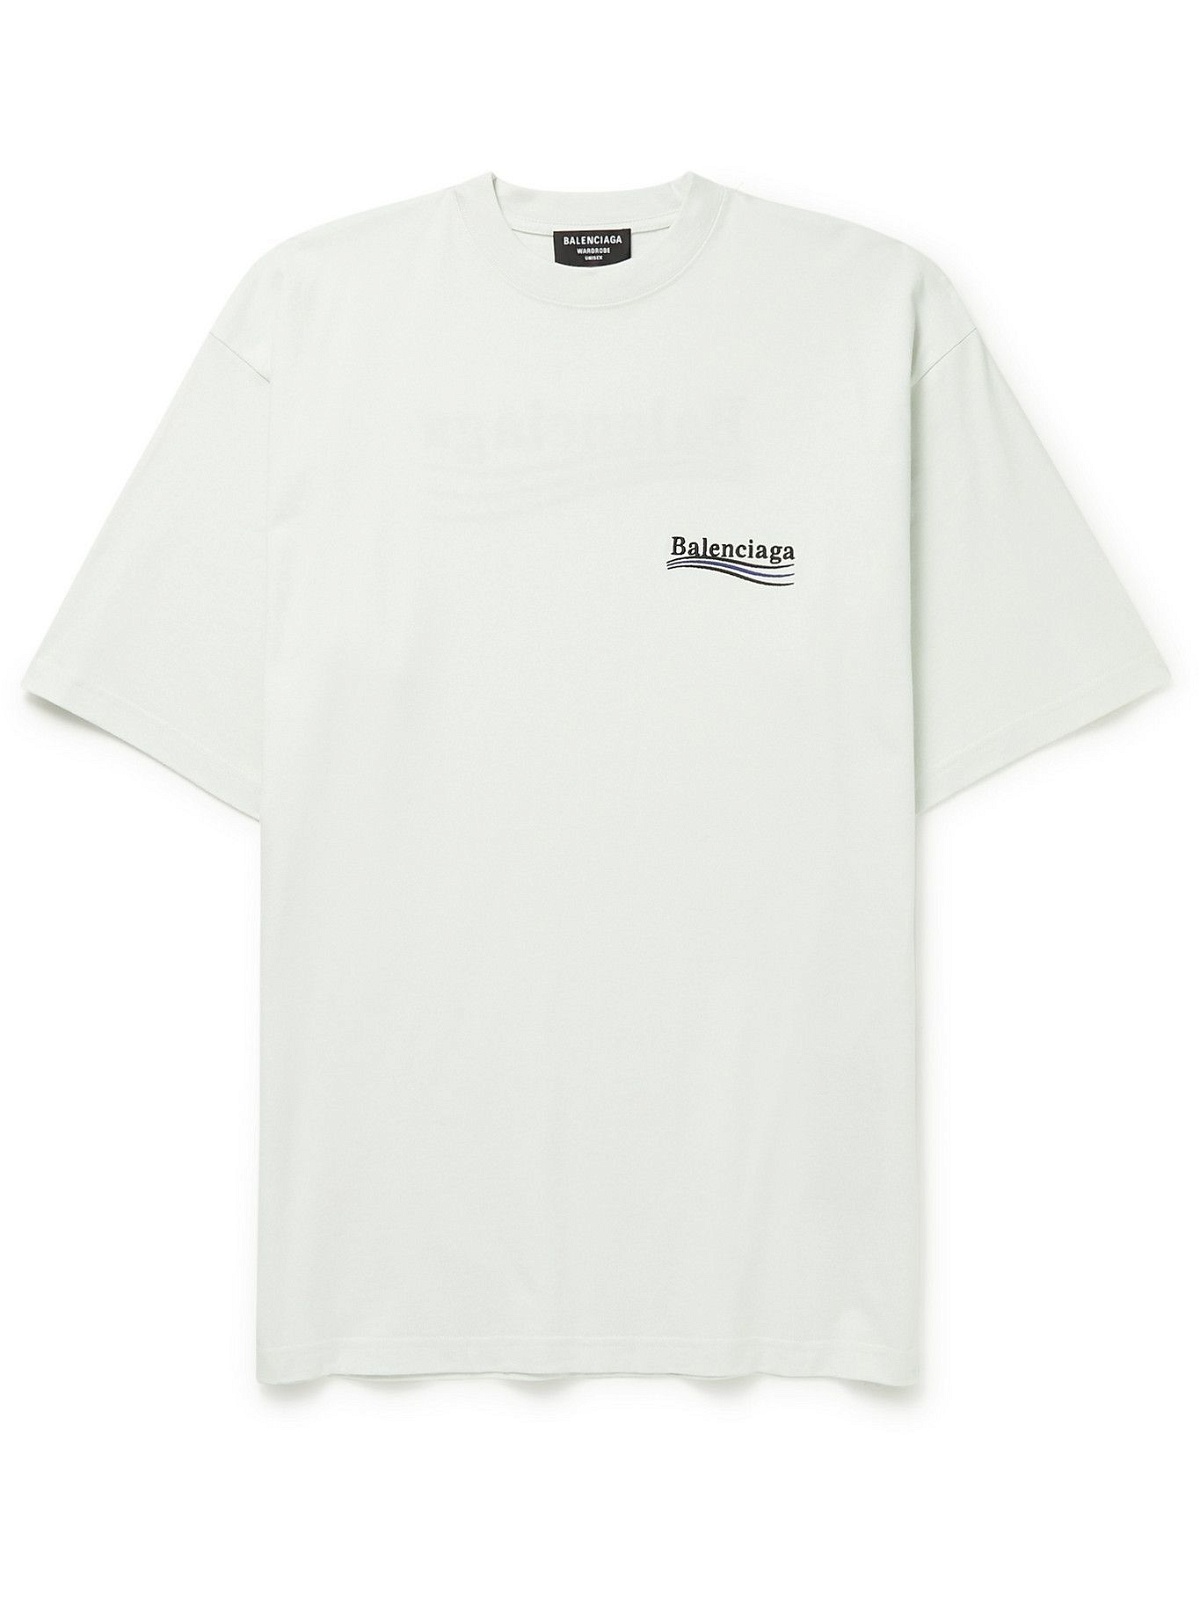 BALENCIAGA - Logo-Embroidered Cotton-Jersey T-Shirt - White Balenciaga